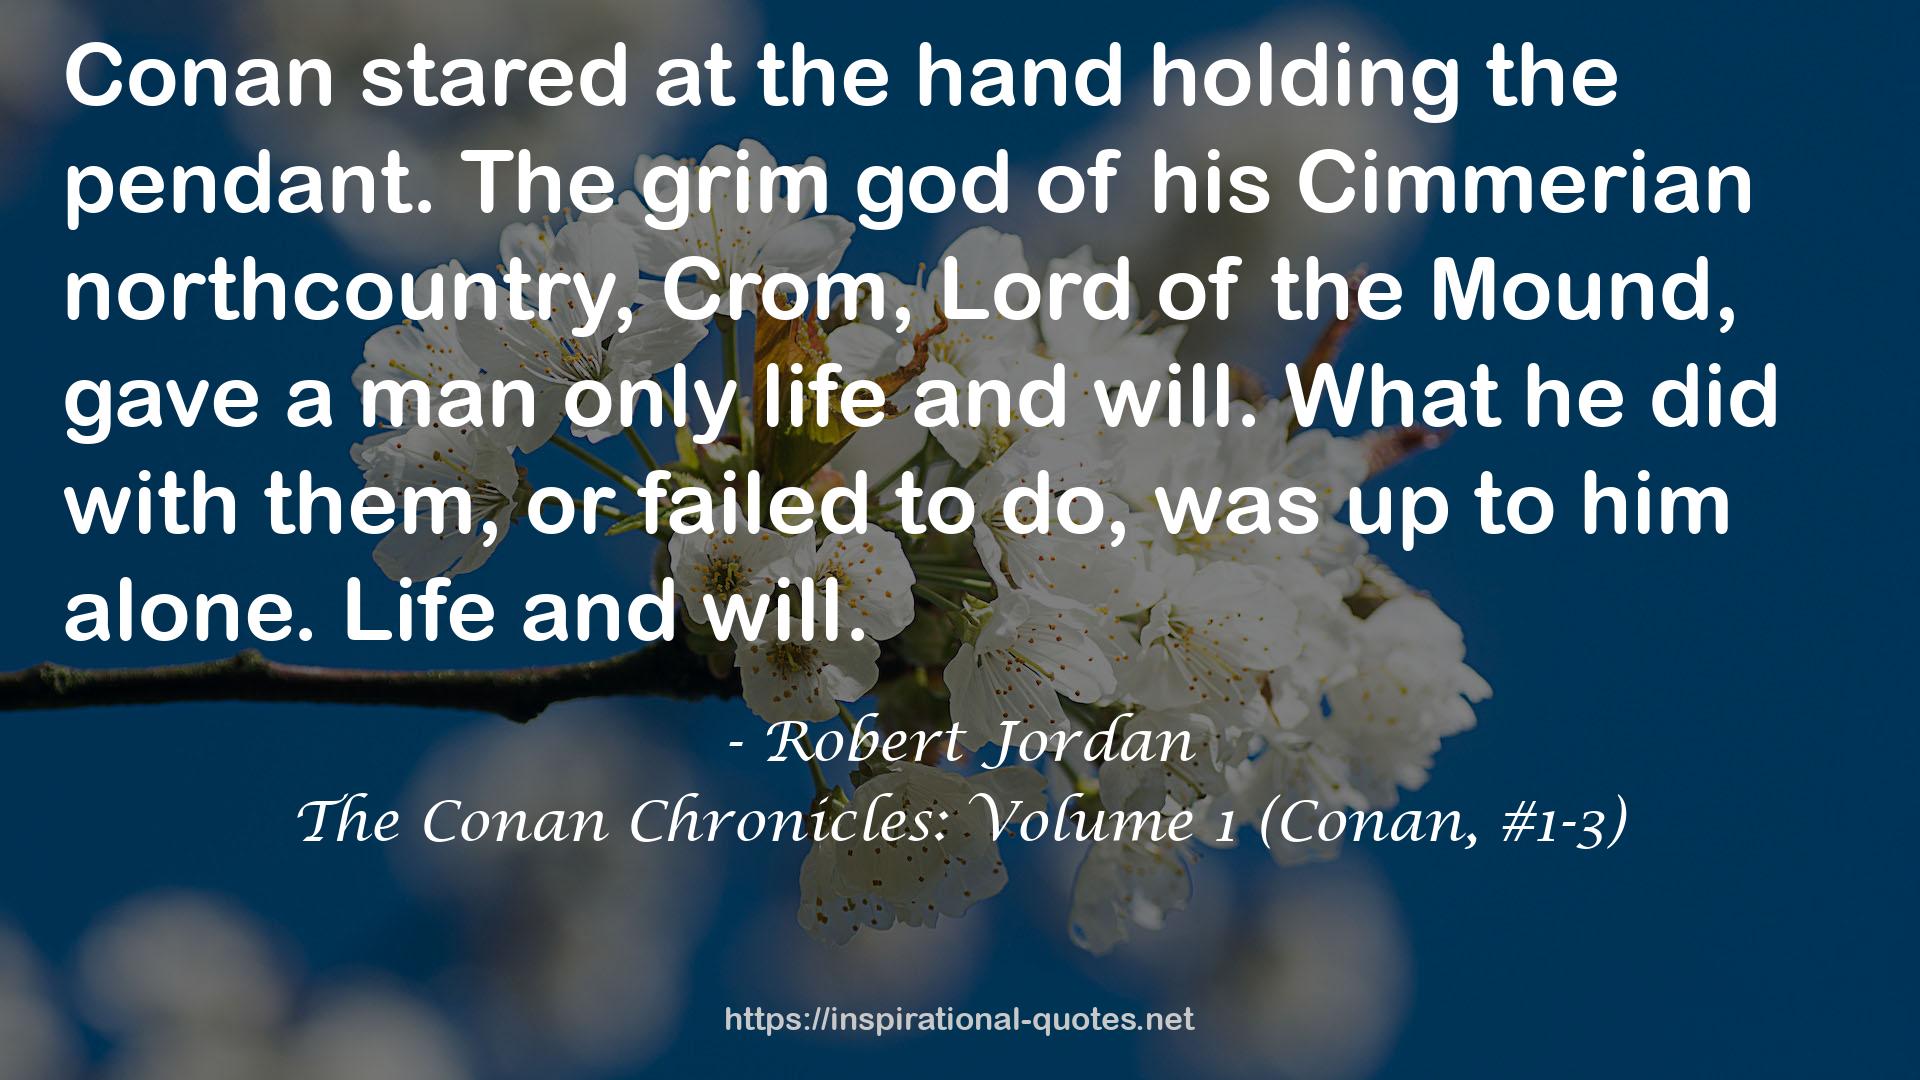 The Conan Chronicles: Volume 1 (Conan, #1-3) QUOTES